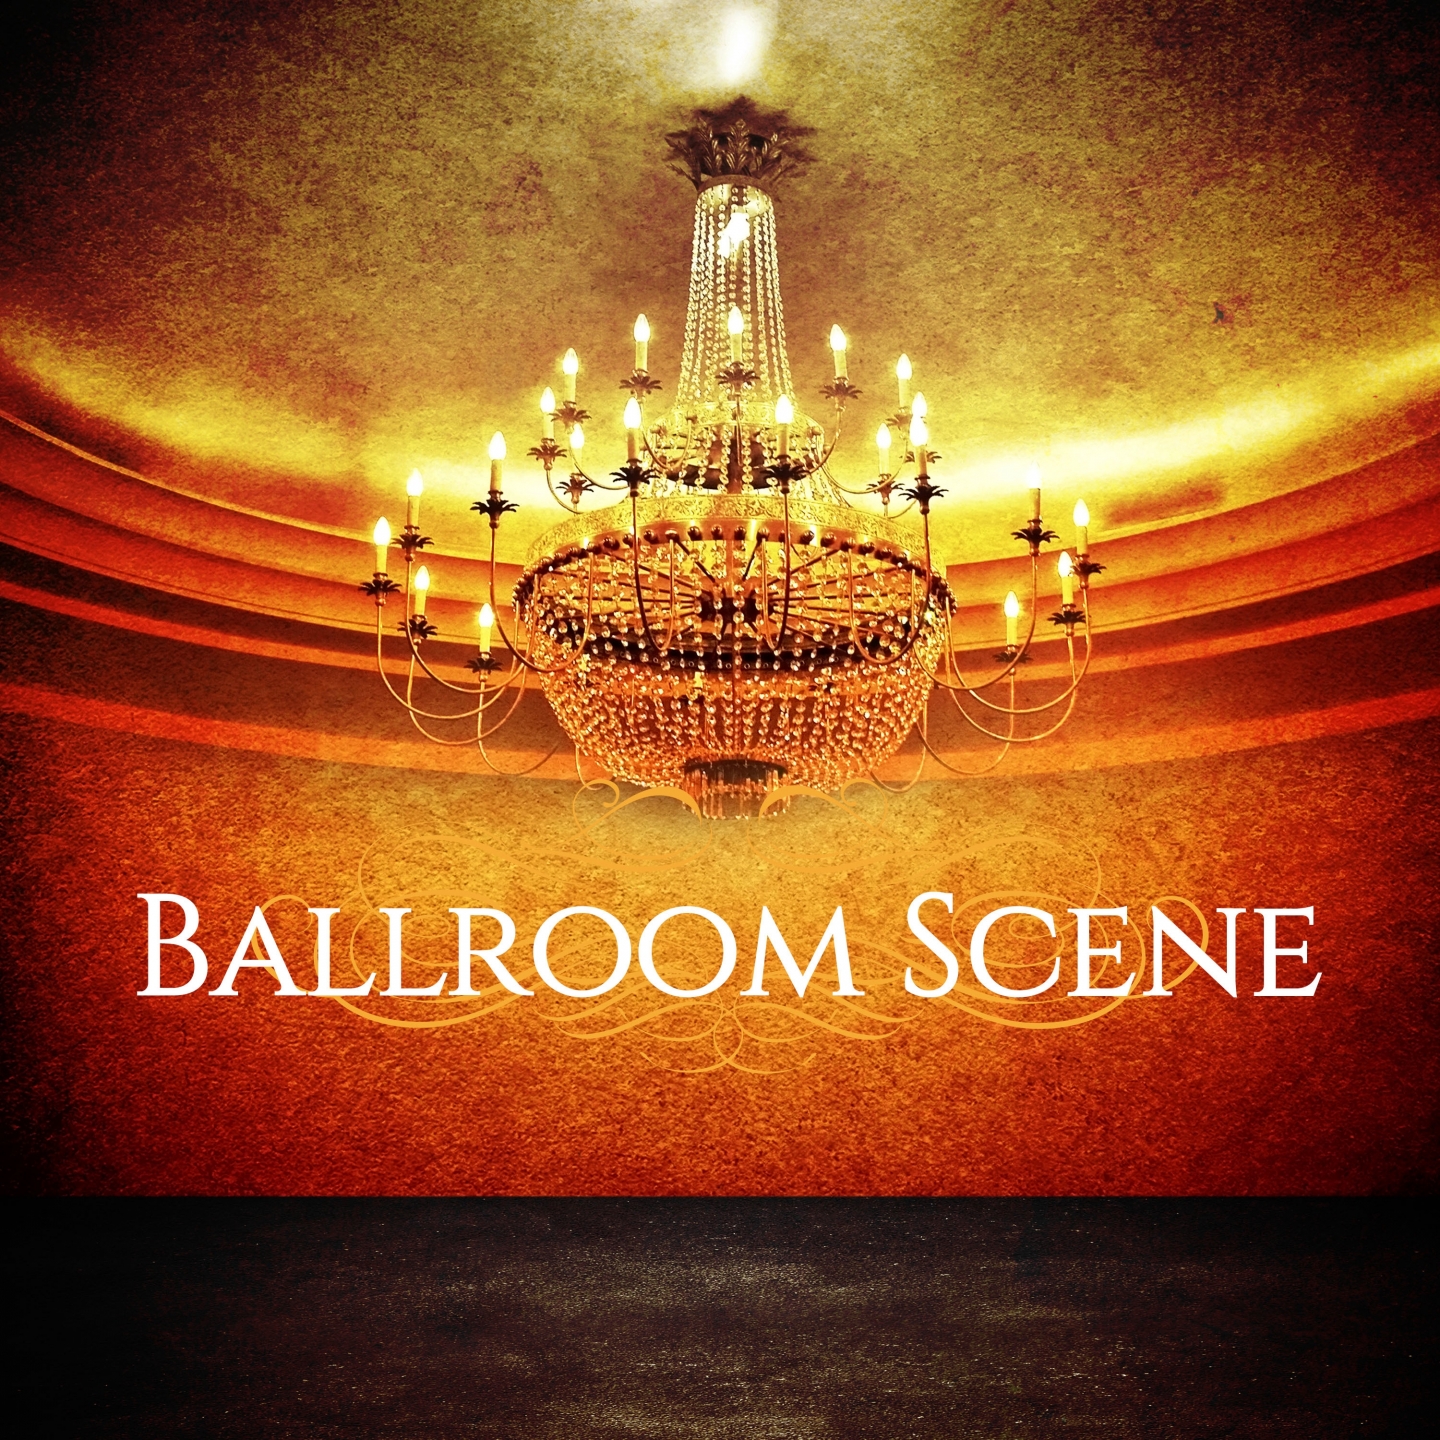 Ballroom Scene